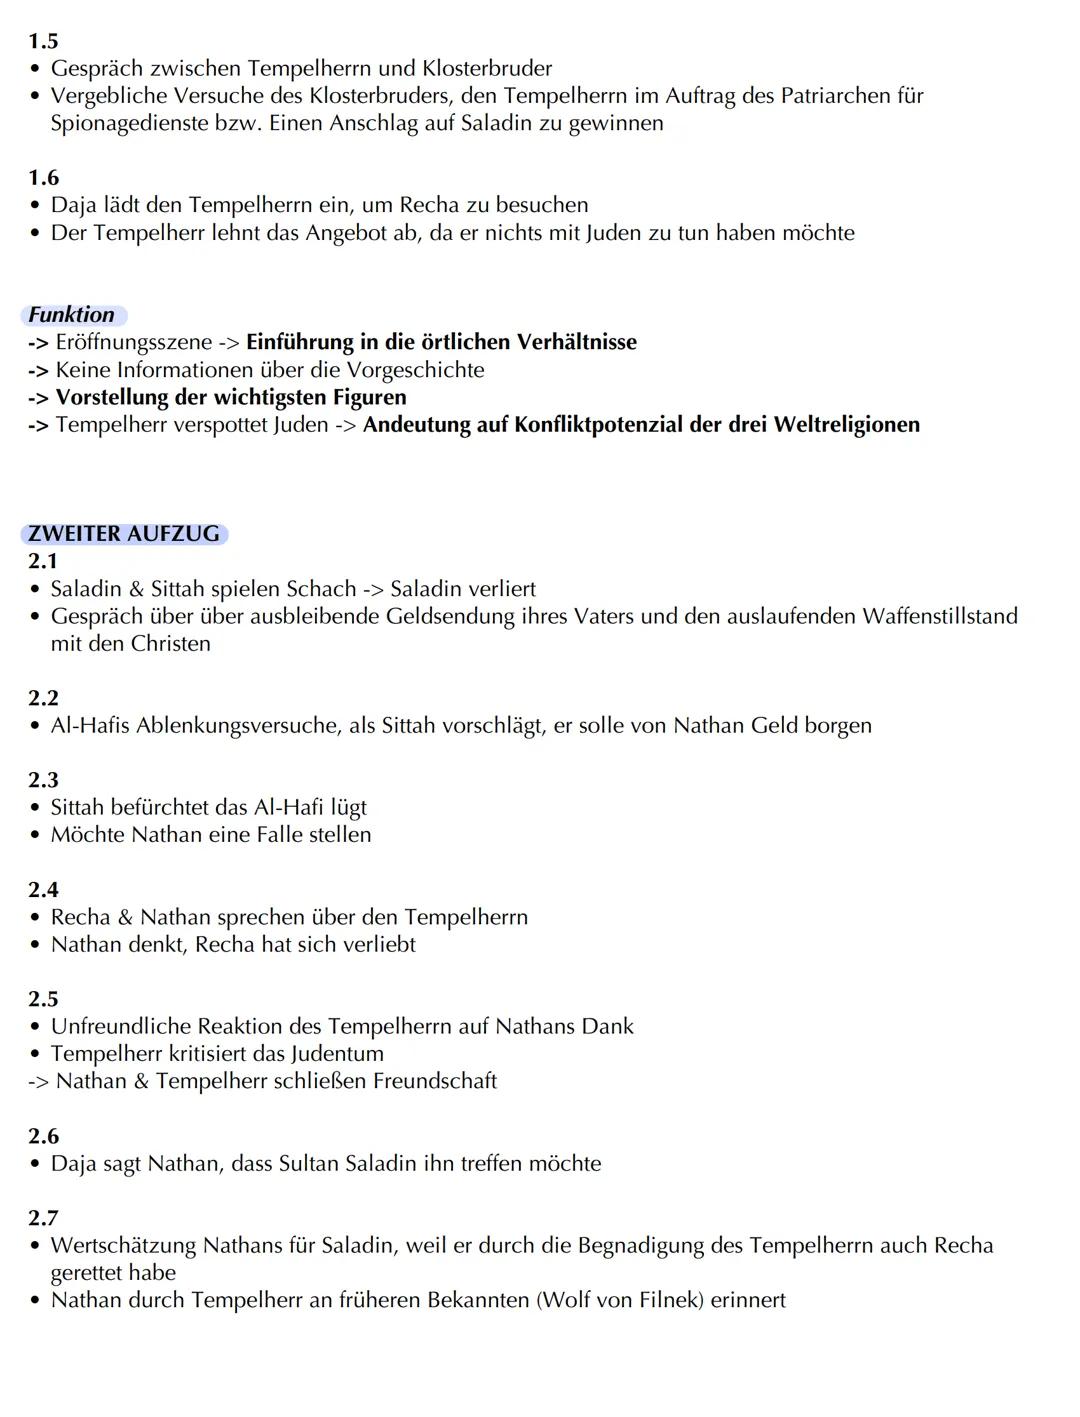 Nathan der Weise
ALLGEMEINES/ GRUNDDATEN
Autor: Gotthold Ephraim Lessing
o Jahr der Veröffentlichung: 1779
o Textsorte: Drama (Dramatisches 